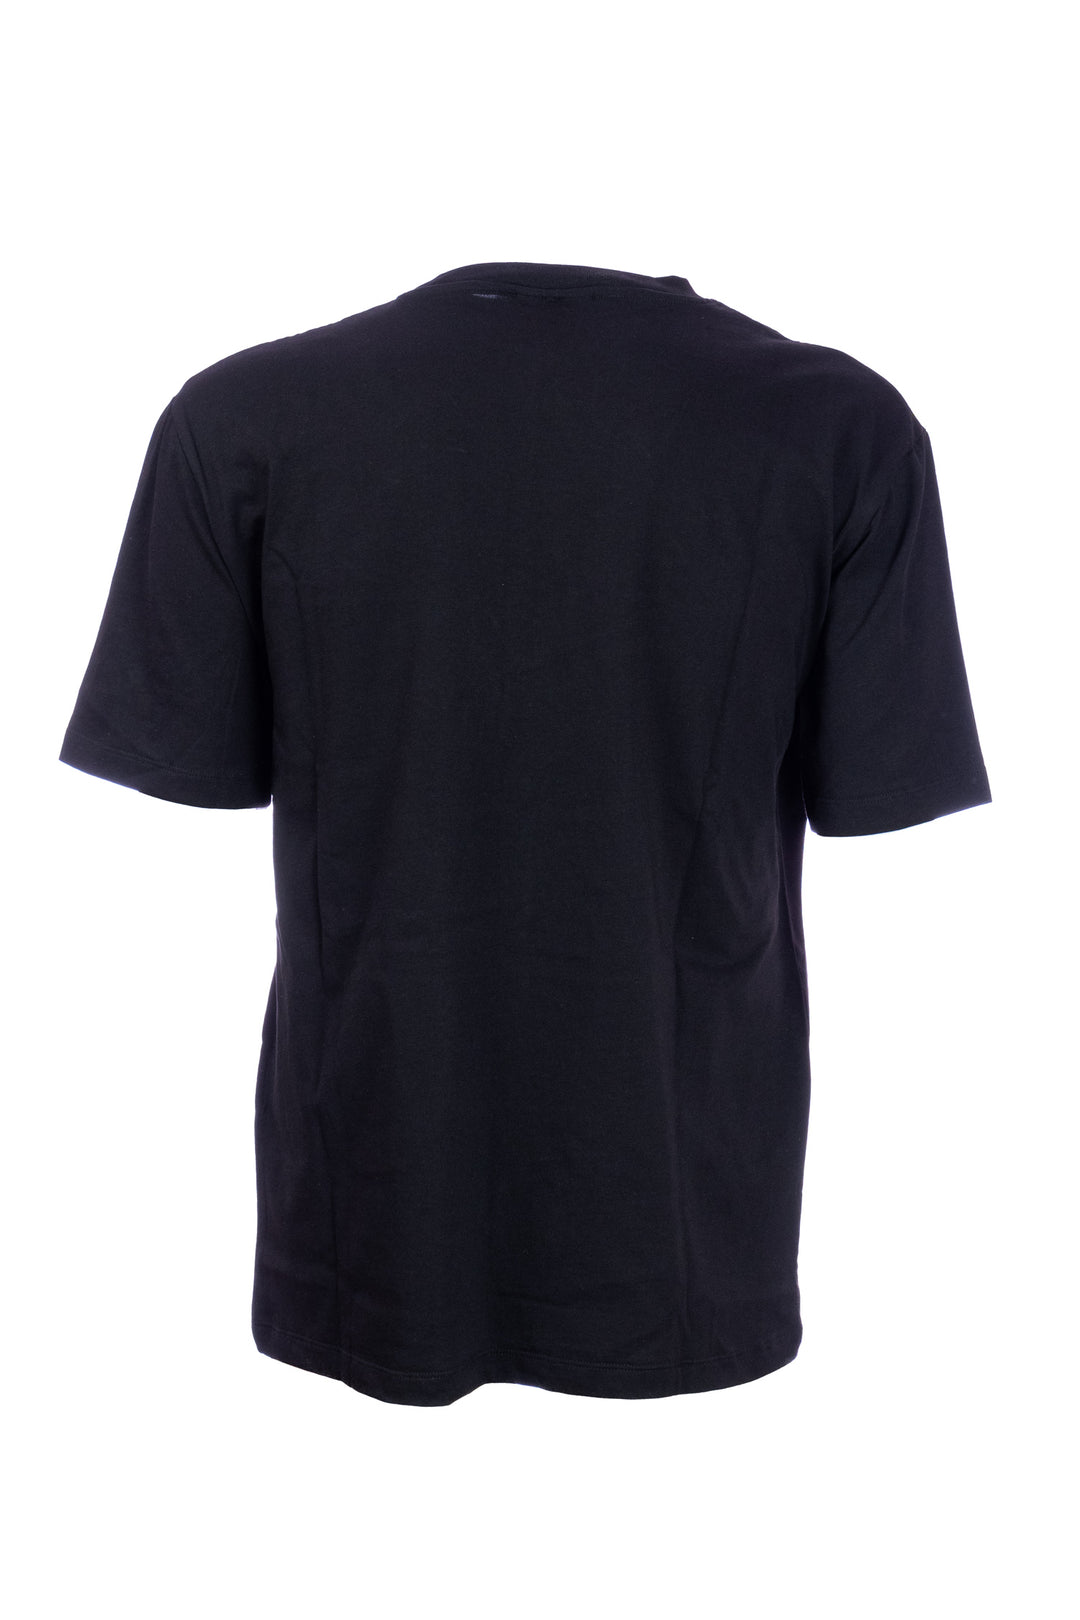 GAELLE T-shirt nera in cotone con logo grande ricamato in contrasto - Mancinelli 1954